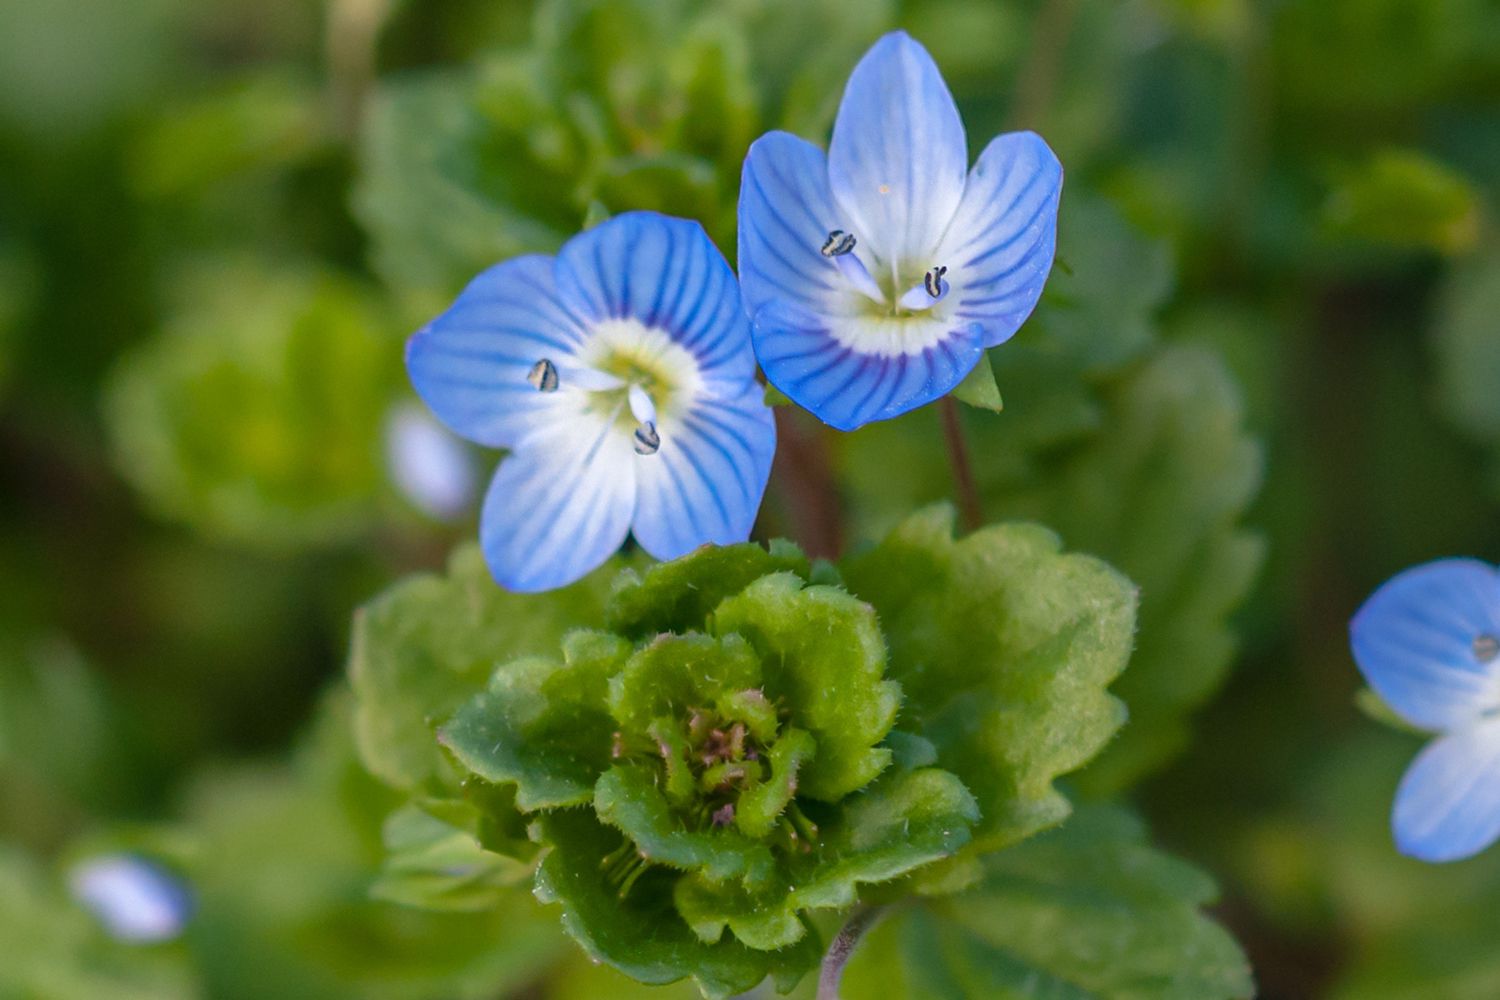 Kriechender Ehrenpreis mit kleinen blau gestreiften Blüten neben Blättern in Nahaufnahme